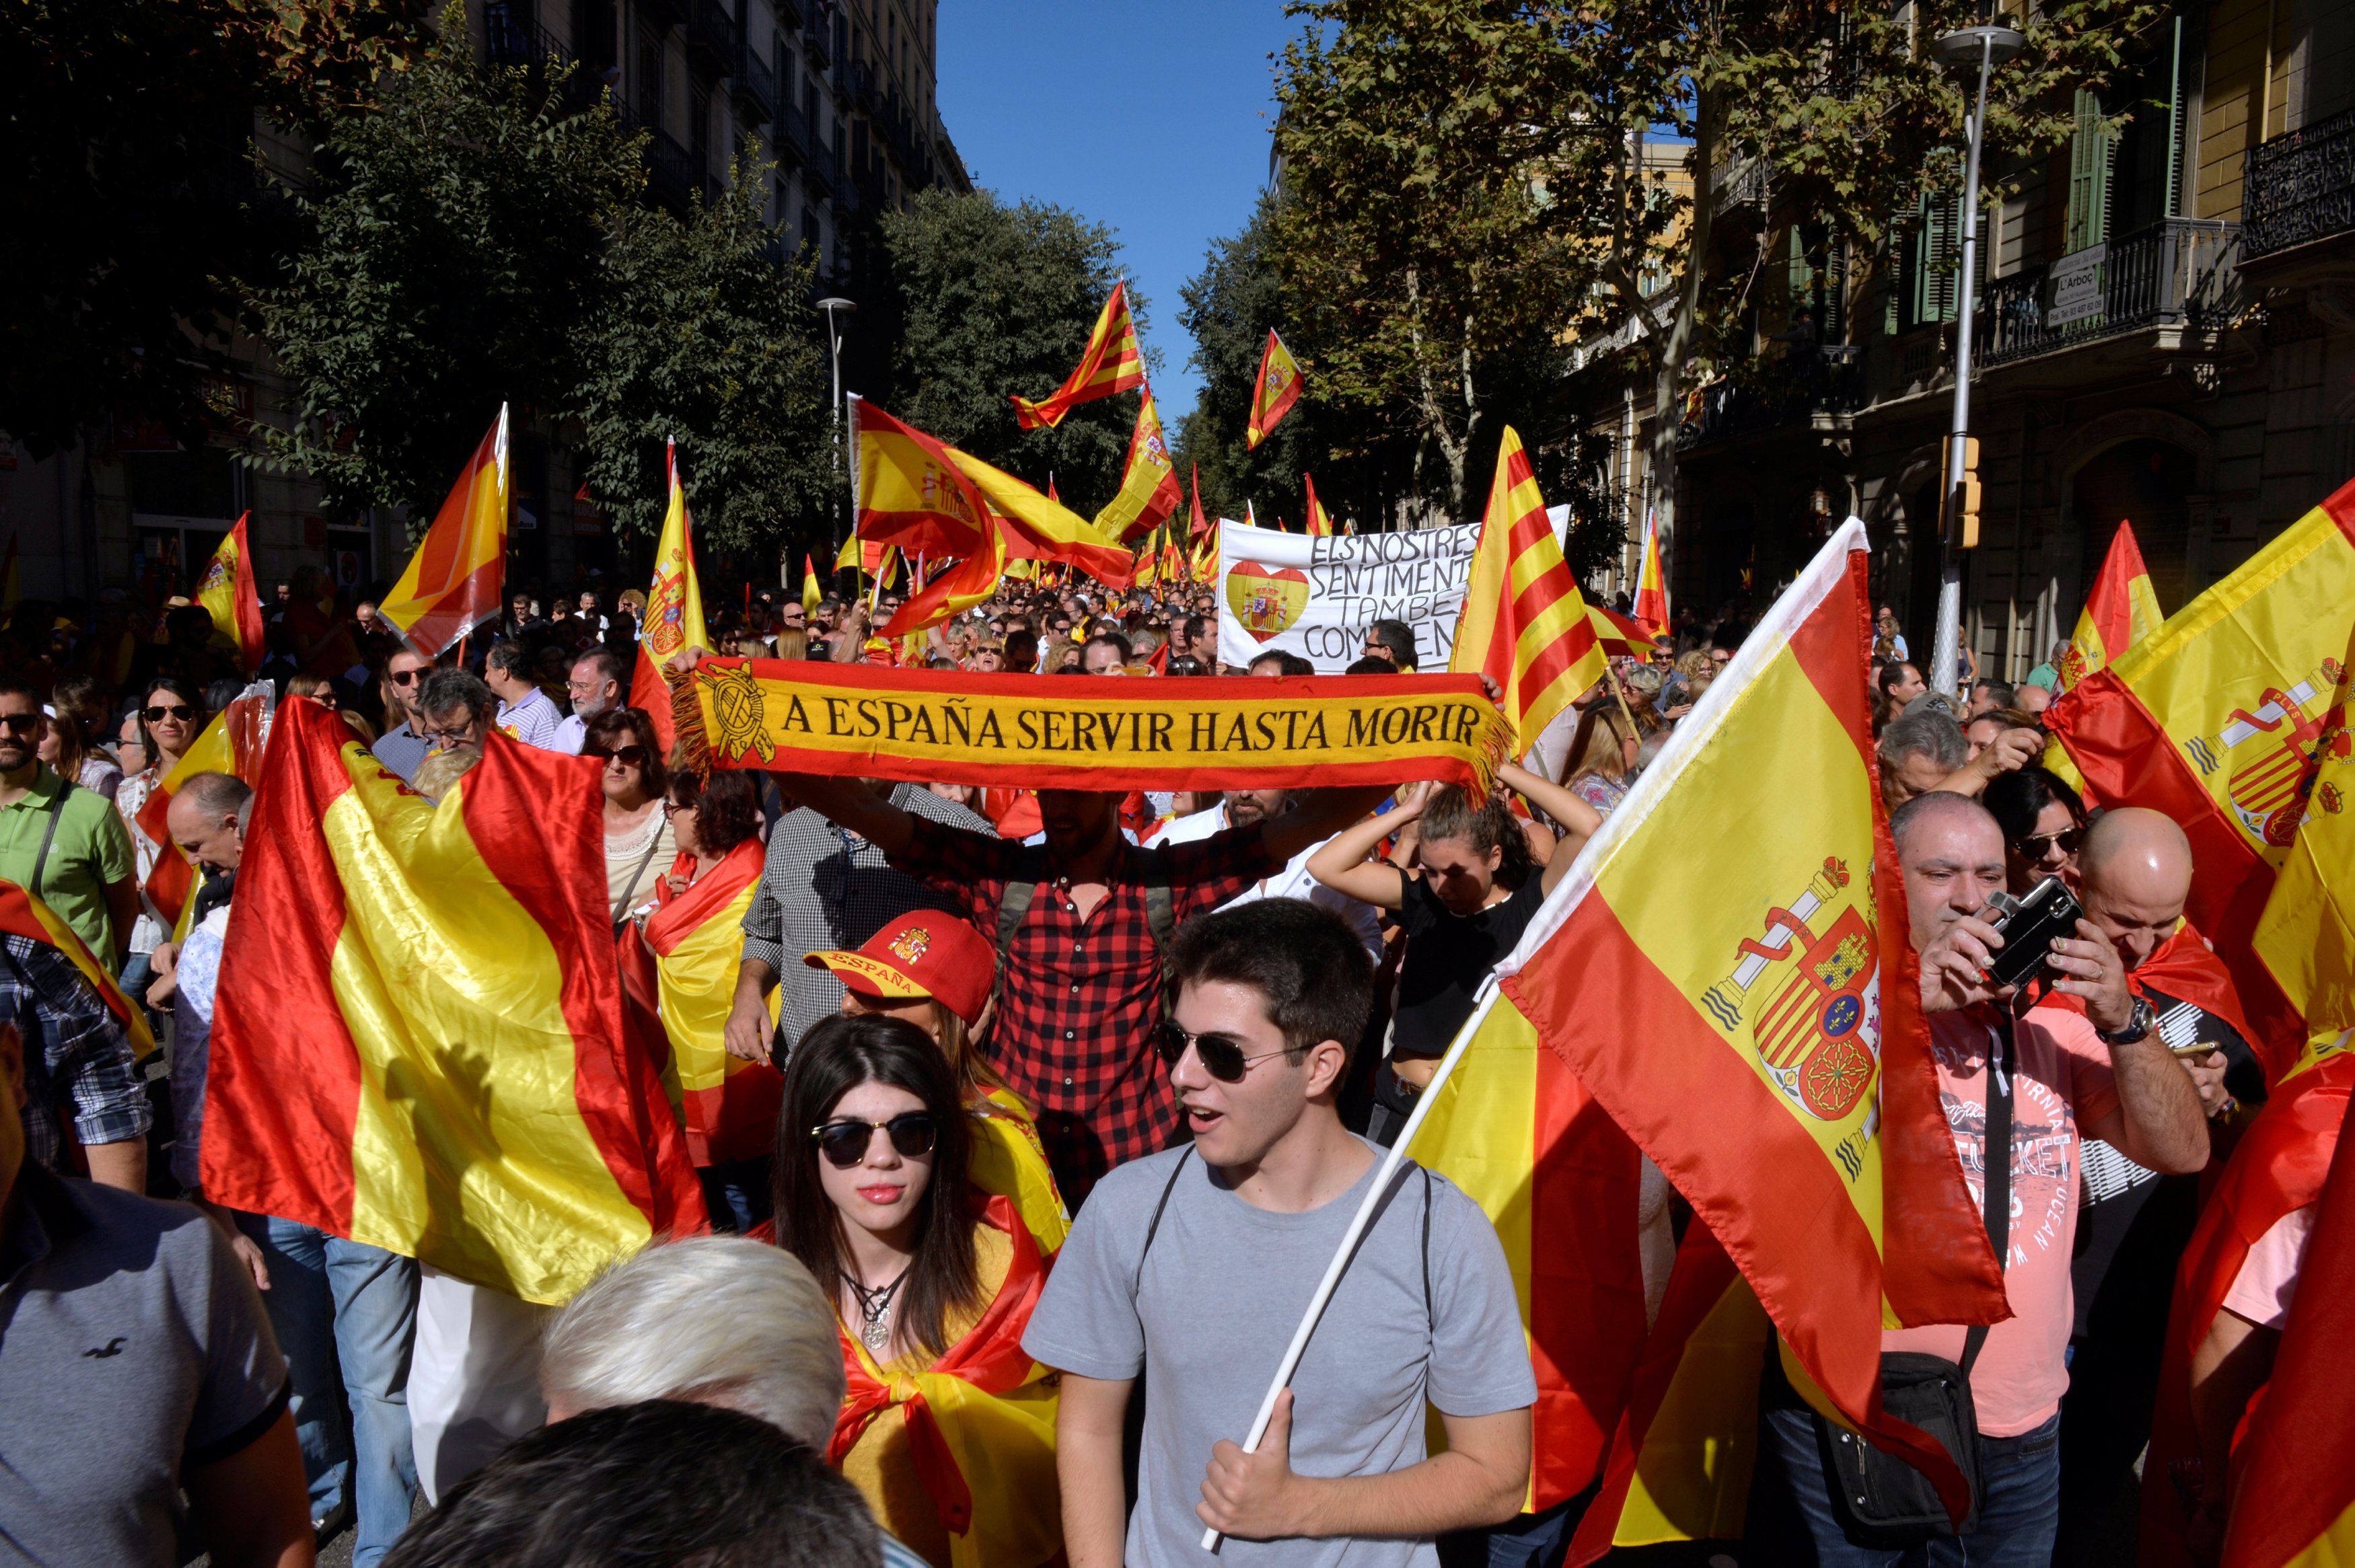 عشرات الآلاف يحتشدون فى إسبانيا لرفض انفصال كتالونيا ودعم وحدة بلادهم